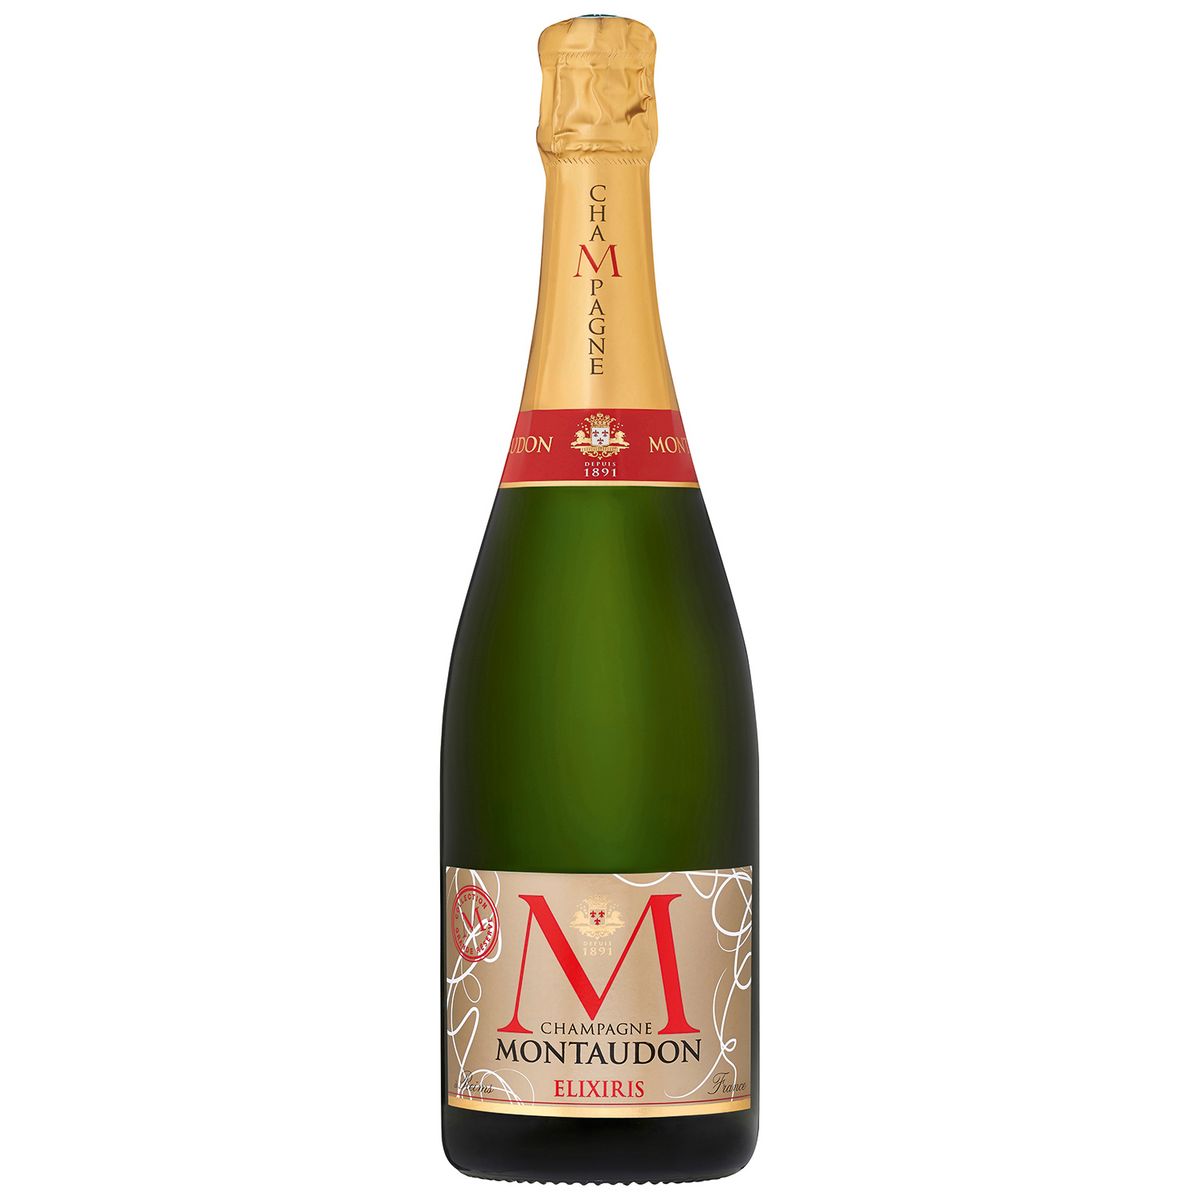 MONTAUDON AOP Champagne Elixiris brut 75cl